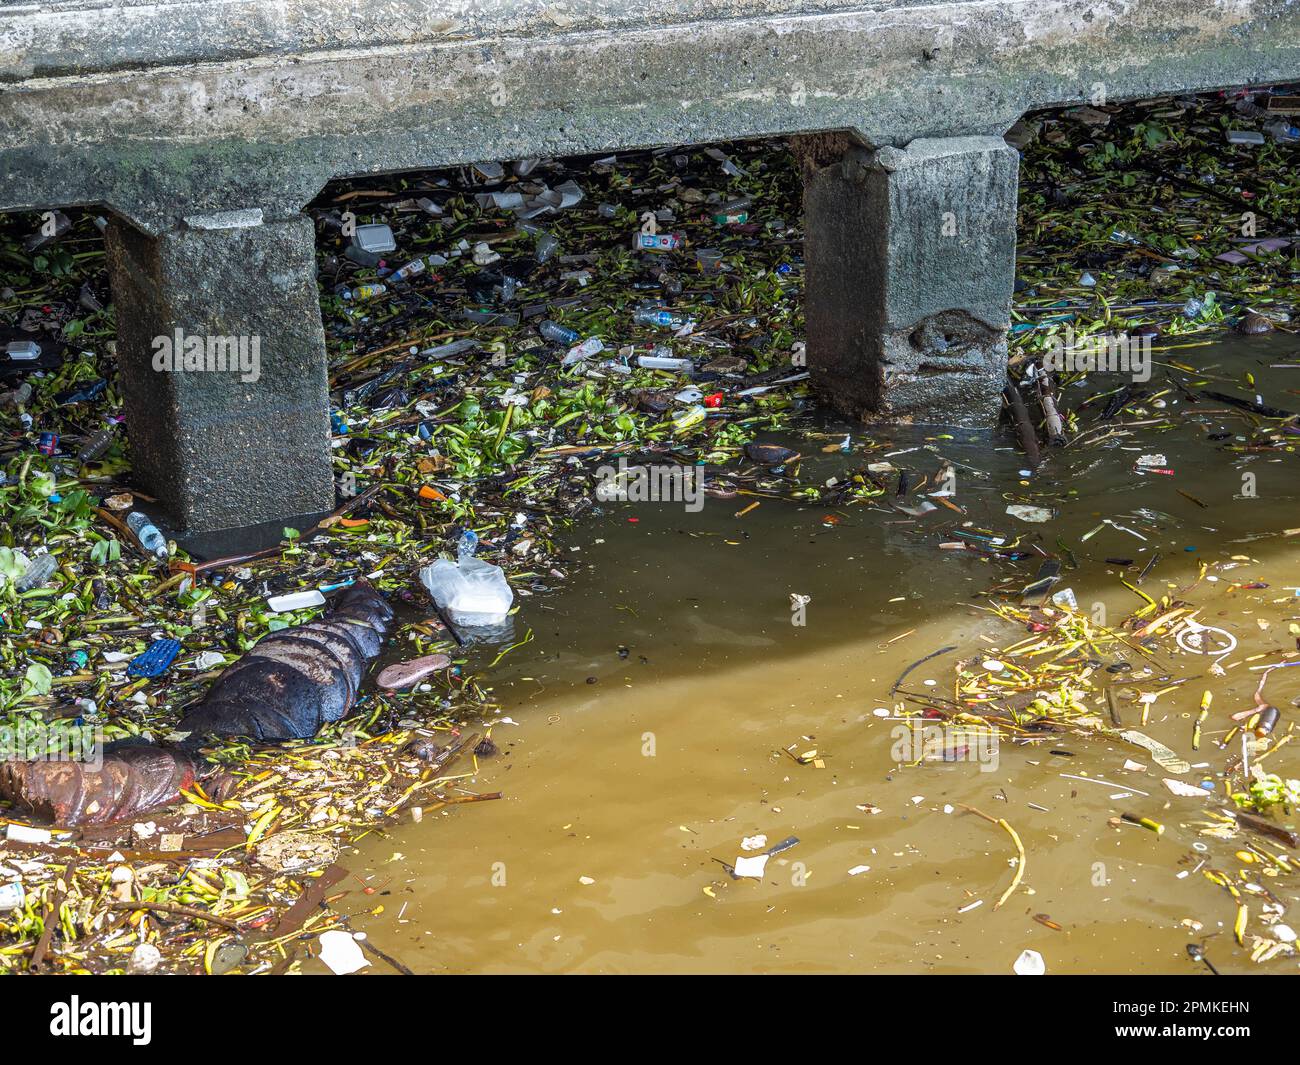 Questa foto cattura la sfortunata realtà dei rifiuti che inquinano il fiume Chao Praya a Bangkok, Thailandia. Nonostante gli sforzi per ripulire il fiume, è stato Foto Stock